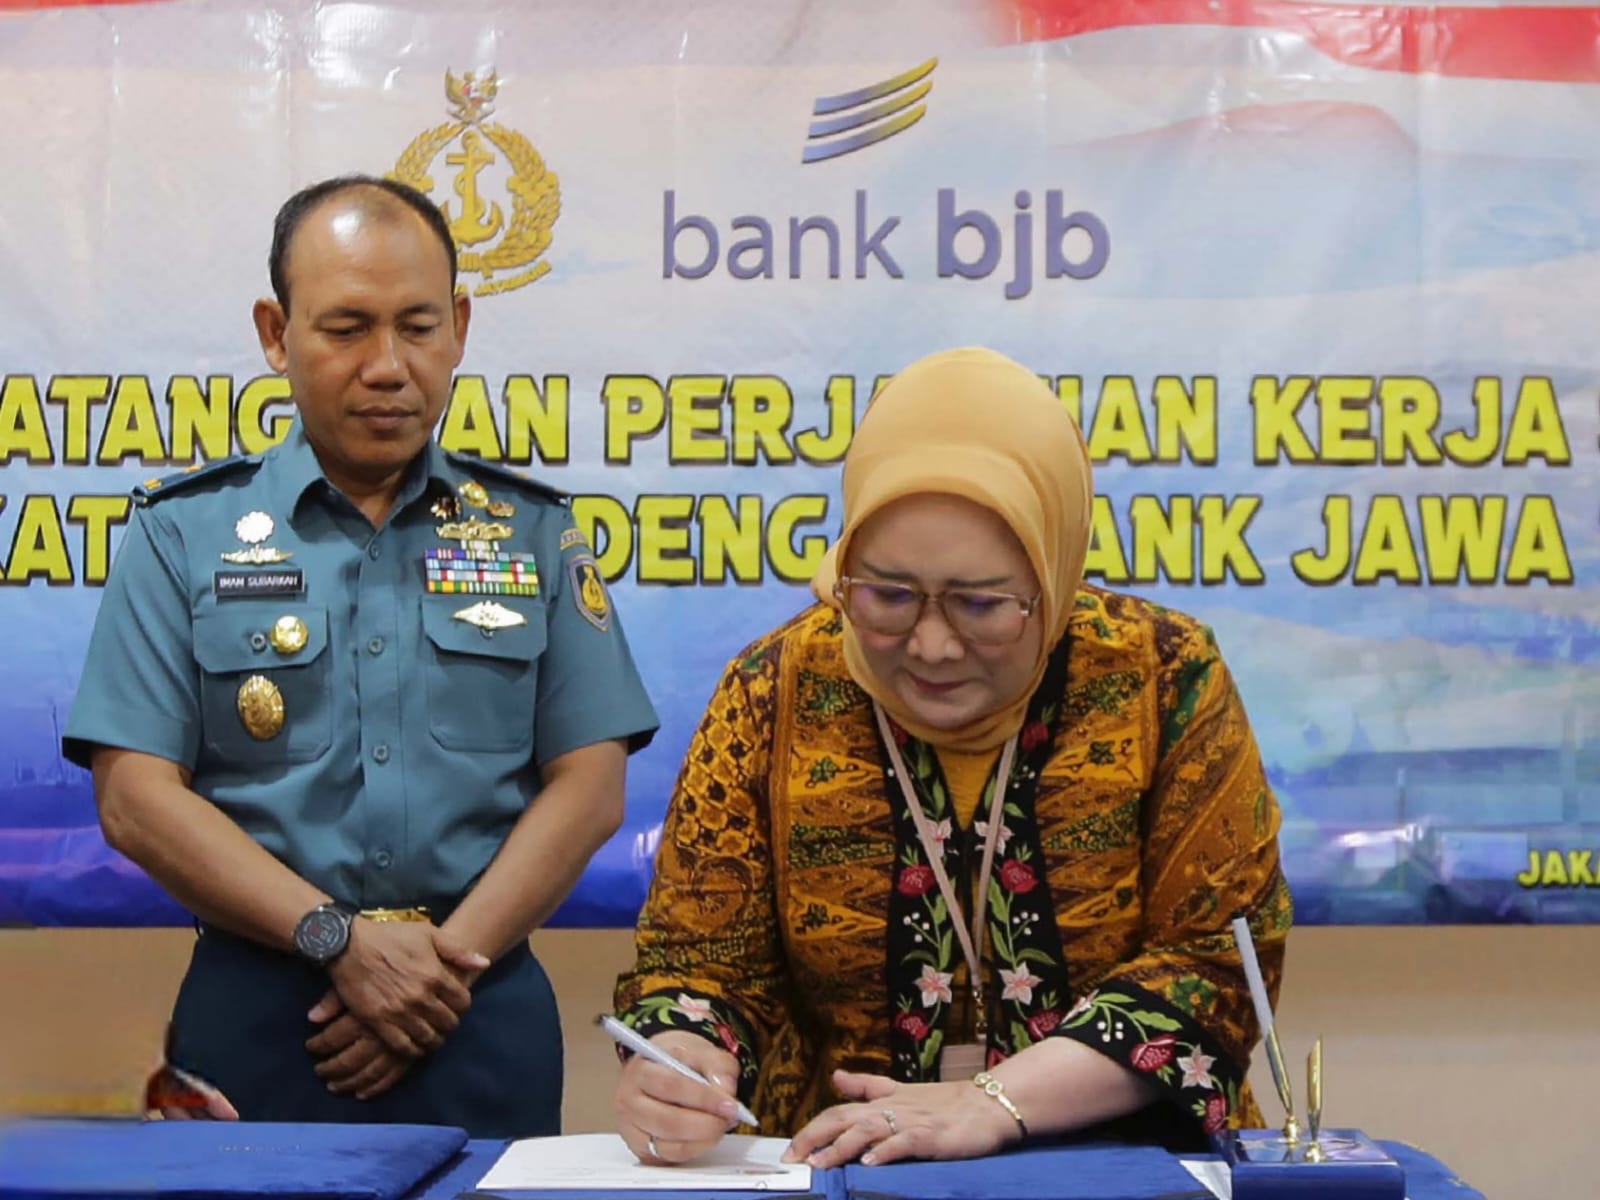 Perkuat Sinergitas, Bank Bjb Tandatangani PKS Dengan TNI AL